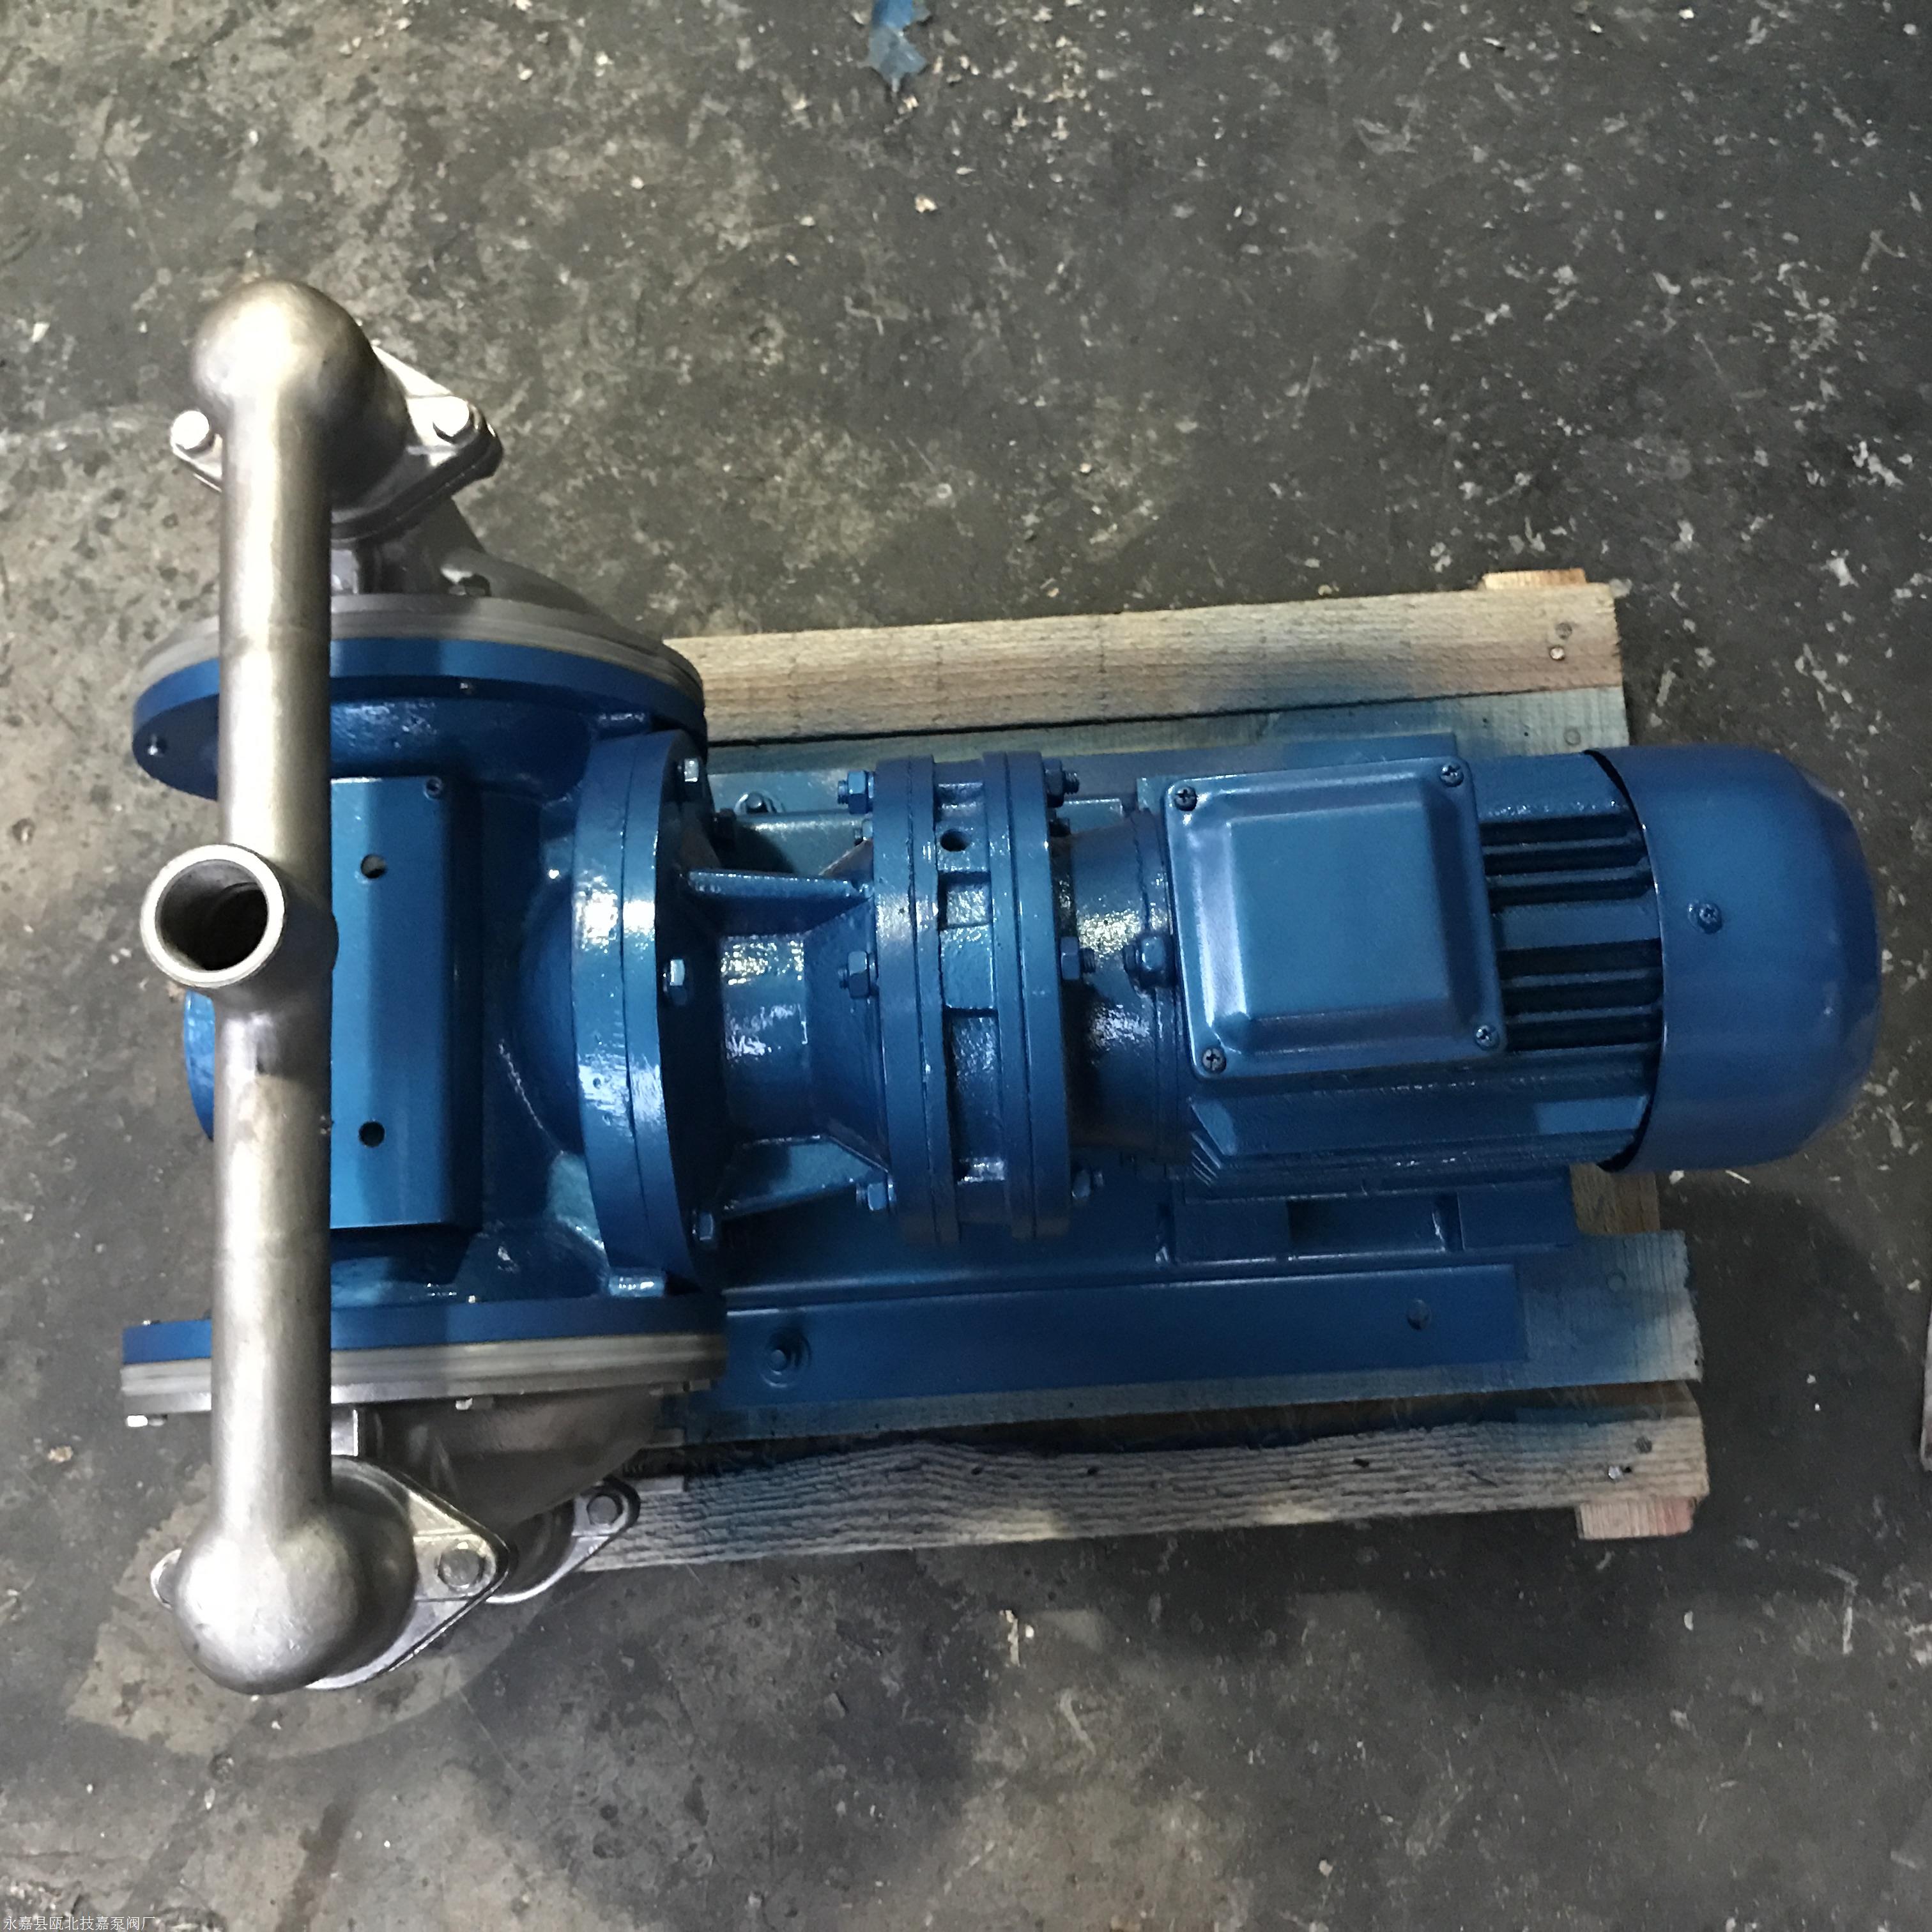 隔膜泵 QBY-80隔膜泵 不锈钢电动隔膜泵 品能泵业